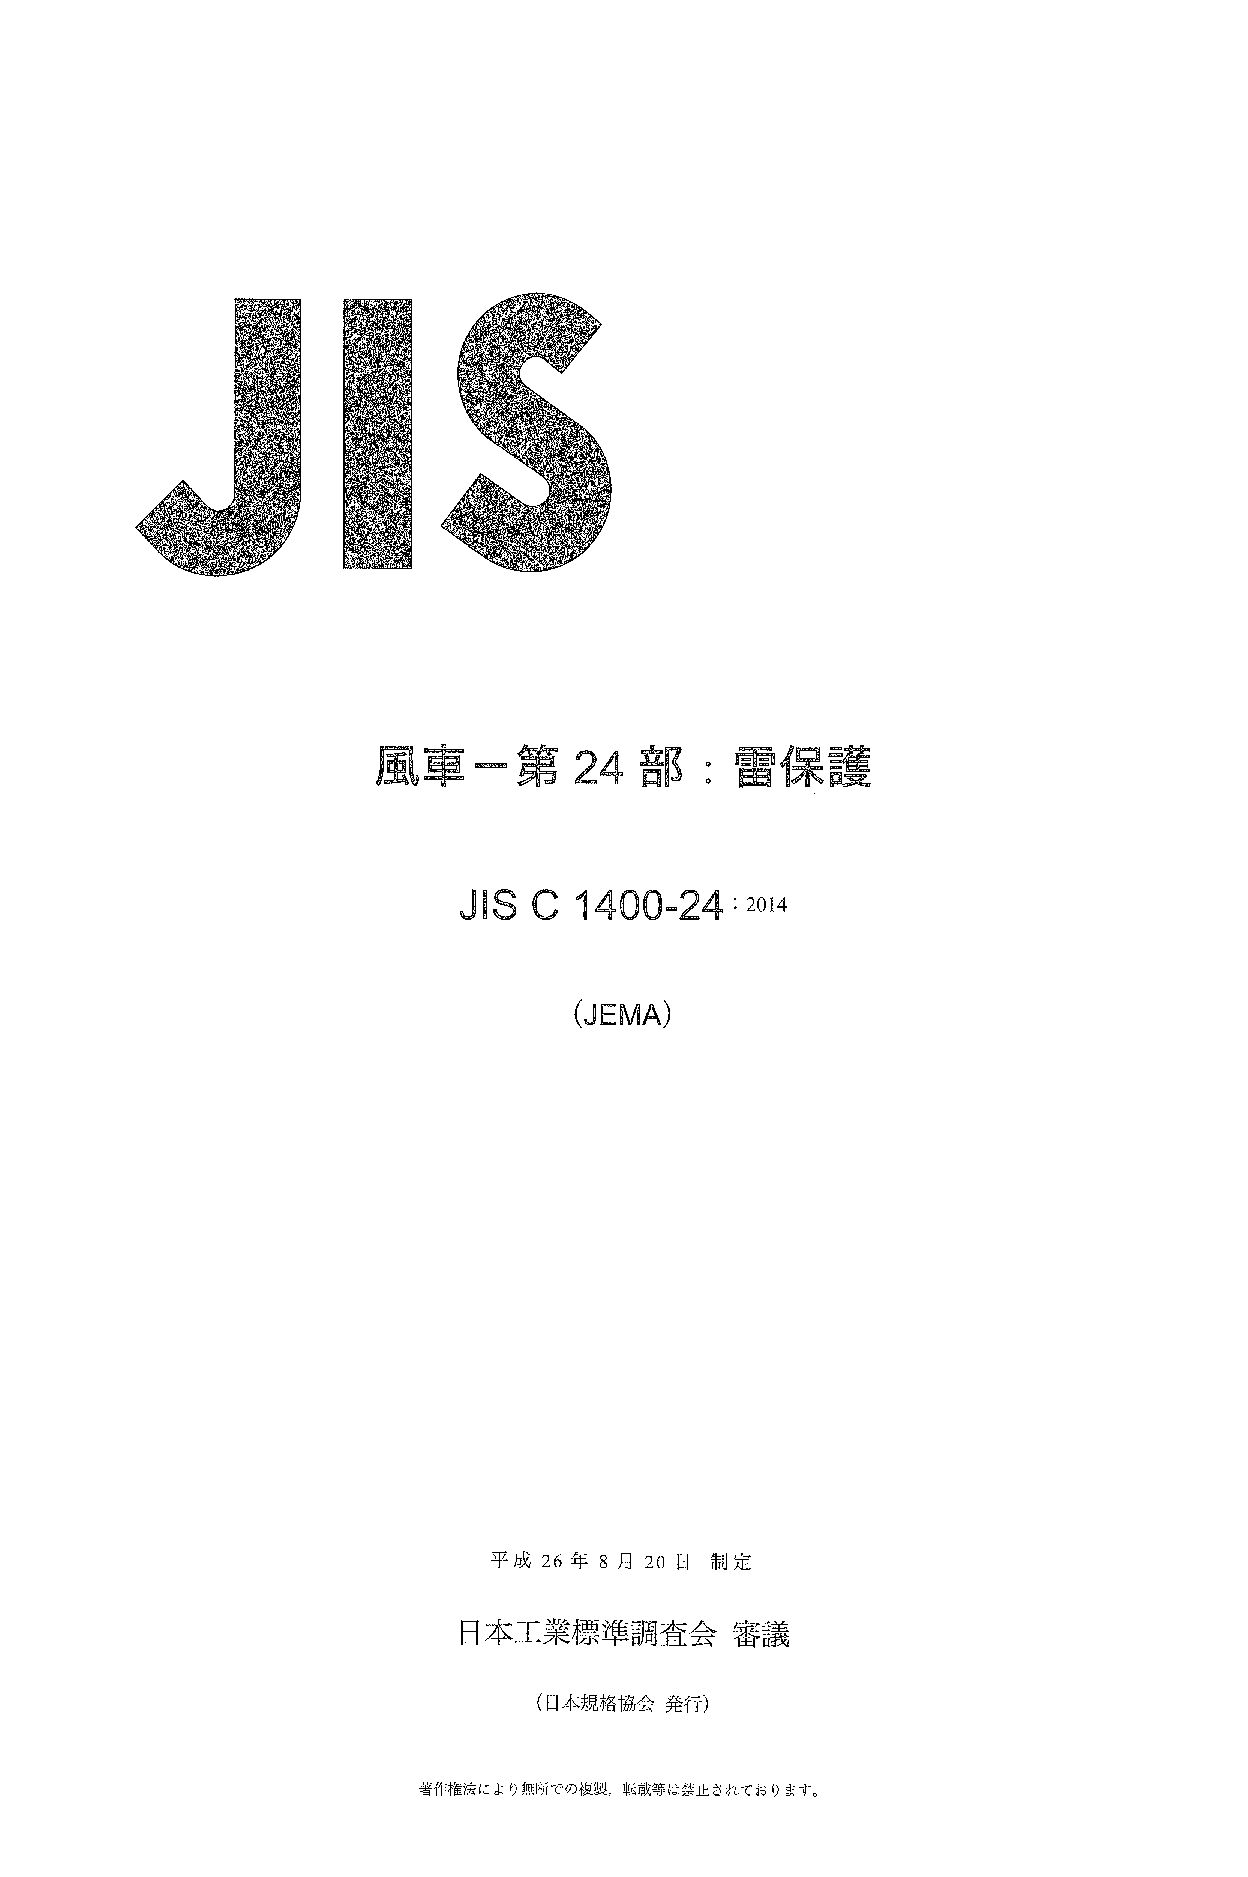 JIS C 1400-24:2014